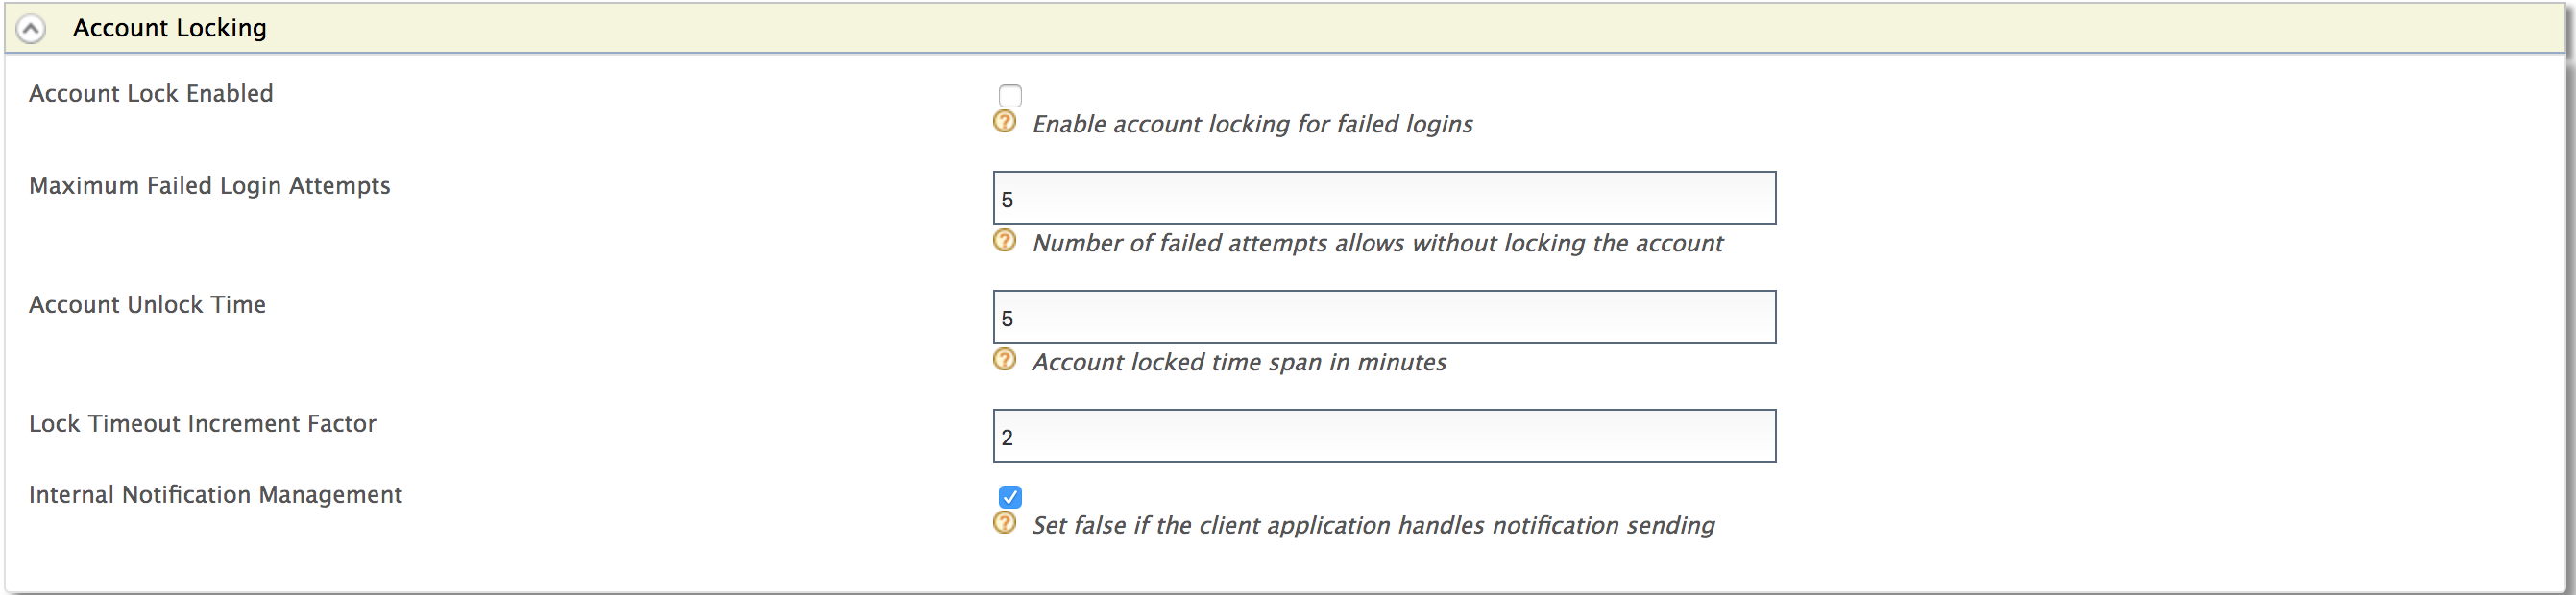 configure-account-locking